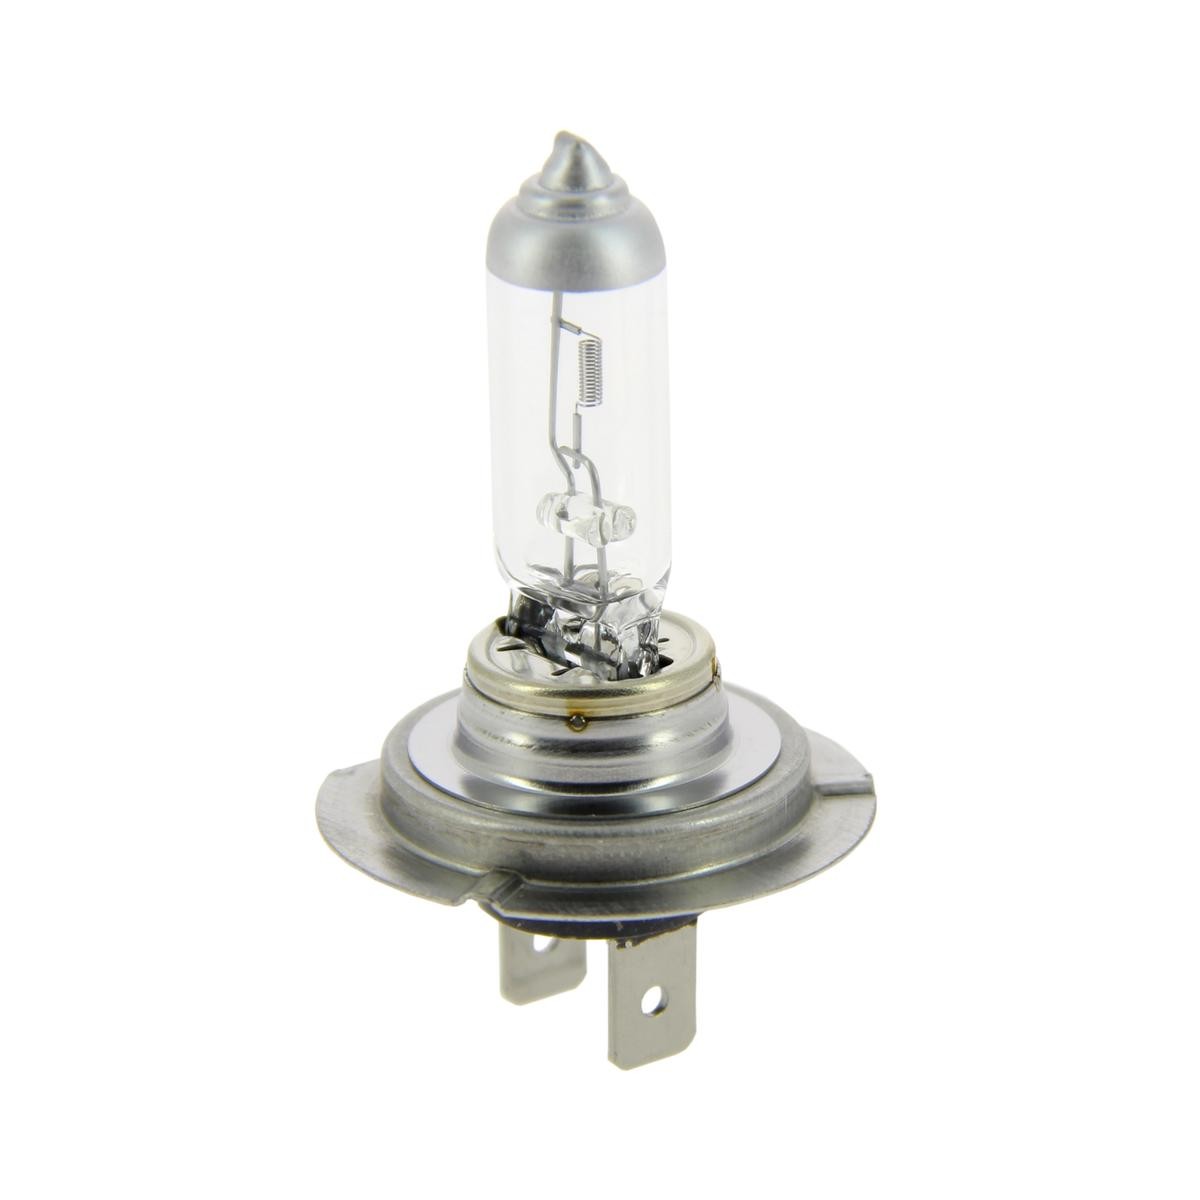 Ampoule pour voiture - H7 - Type de lampe : Halogène, Lampe H7